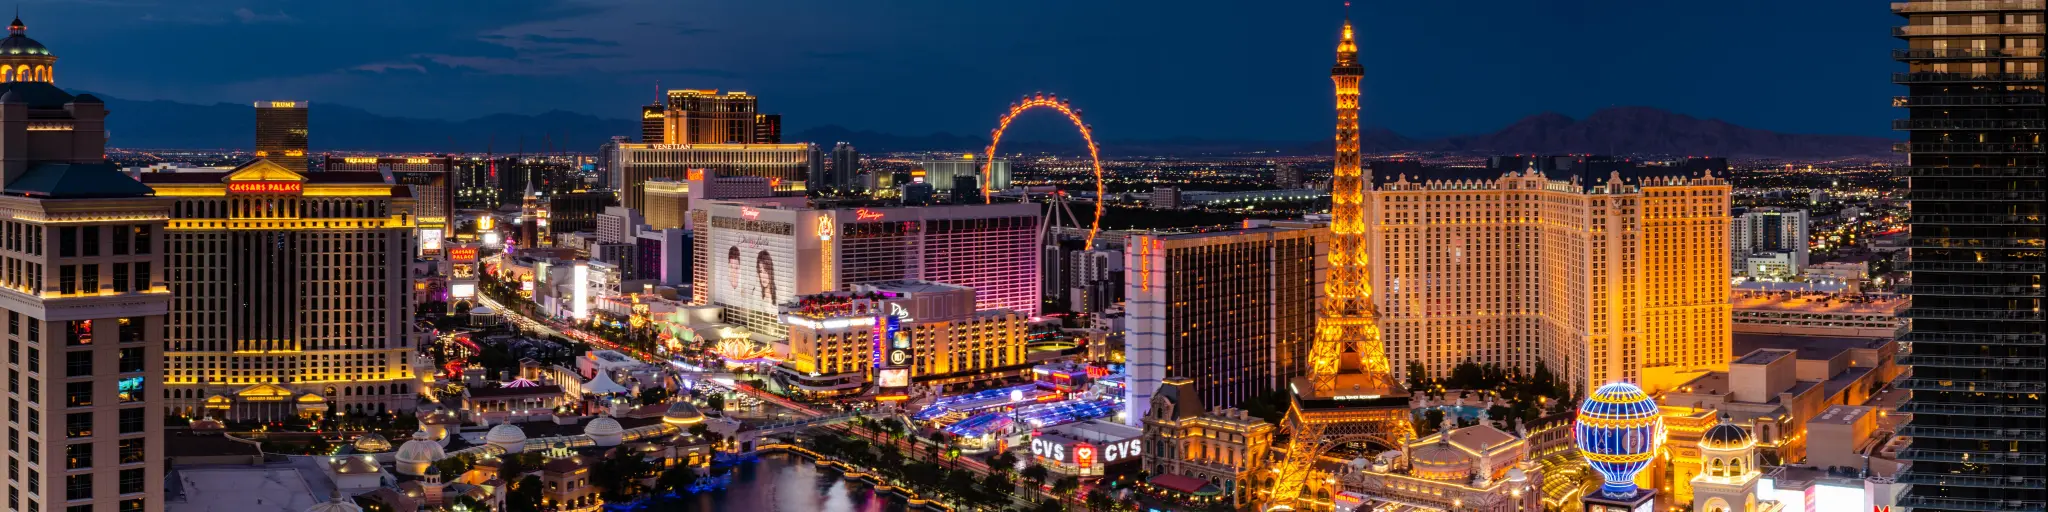 Panorama of the Las Vegas skyline at night in Las Vegas, Nevada, USA.